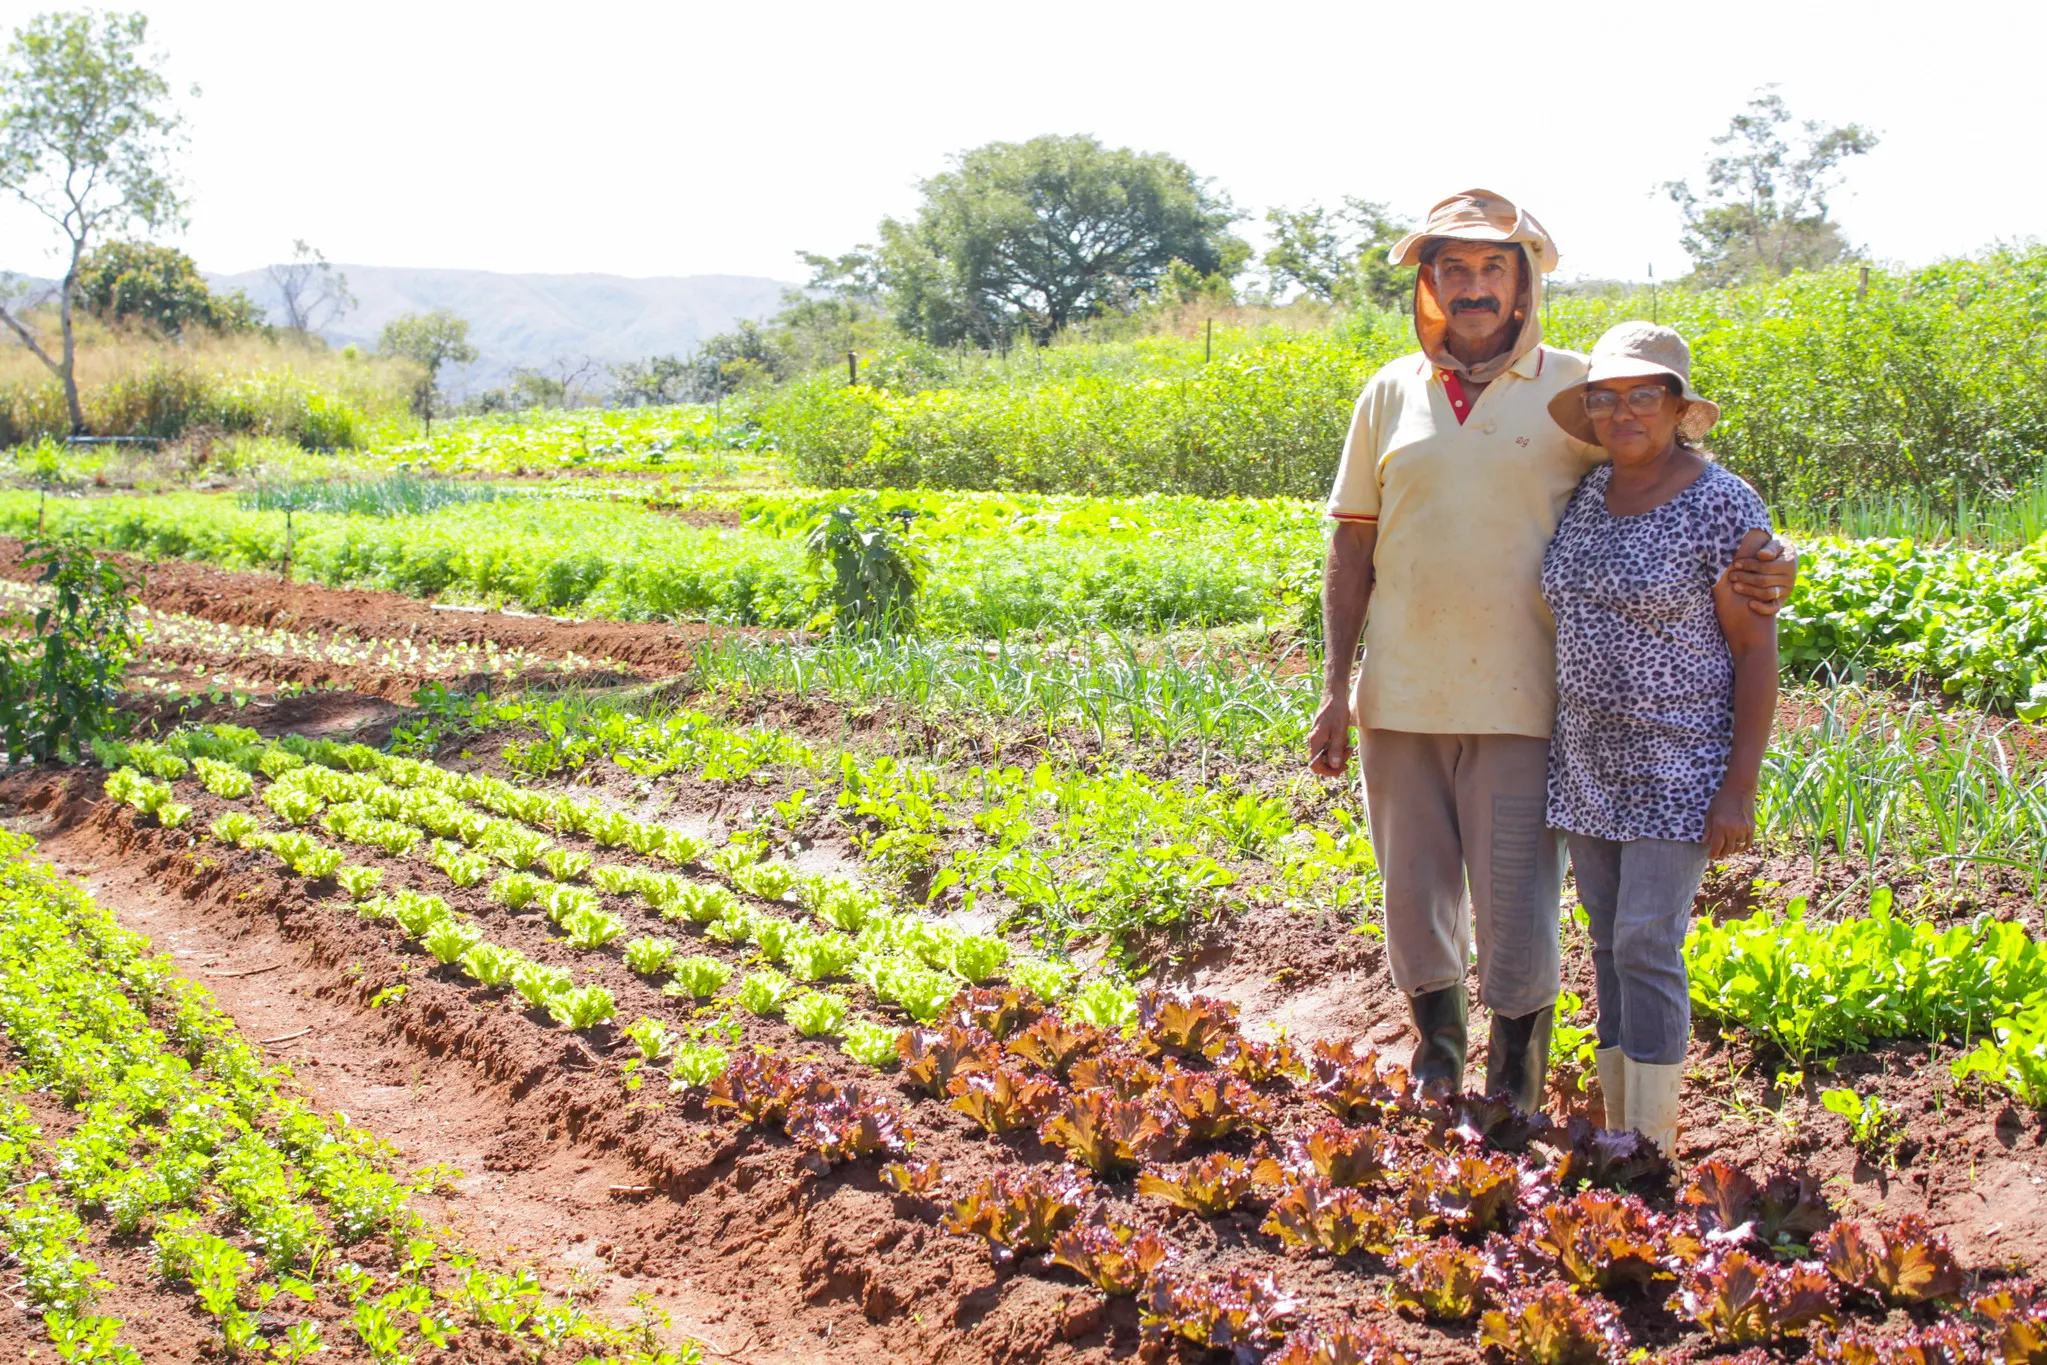 A produção agrícola de núcleos familiares também é fonte das cestas verdes entregues às famílias em situação de vulnerabilidade | Foto: Tony Oliveira/Agência Brasília